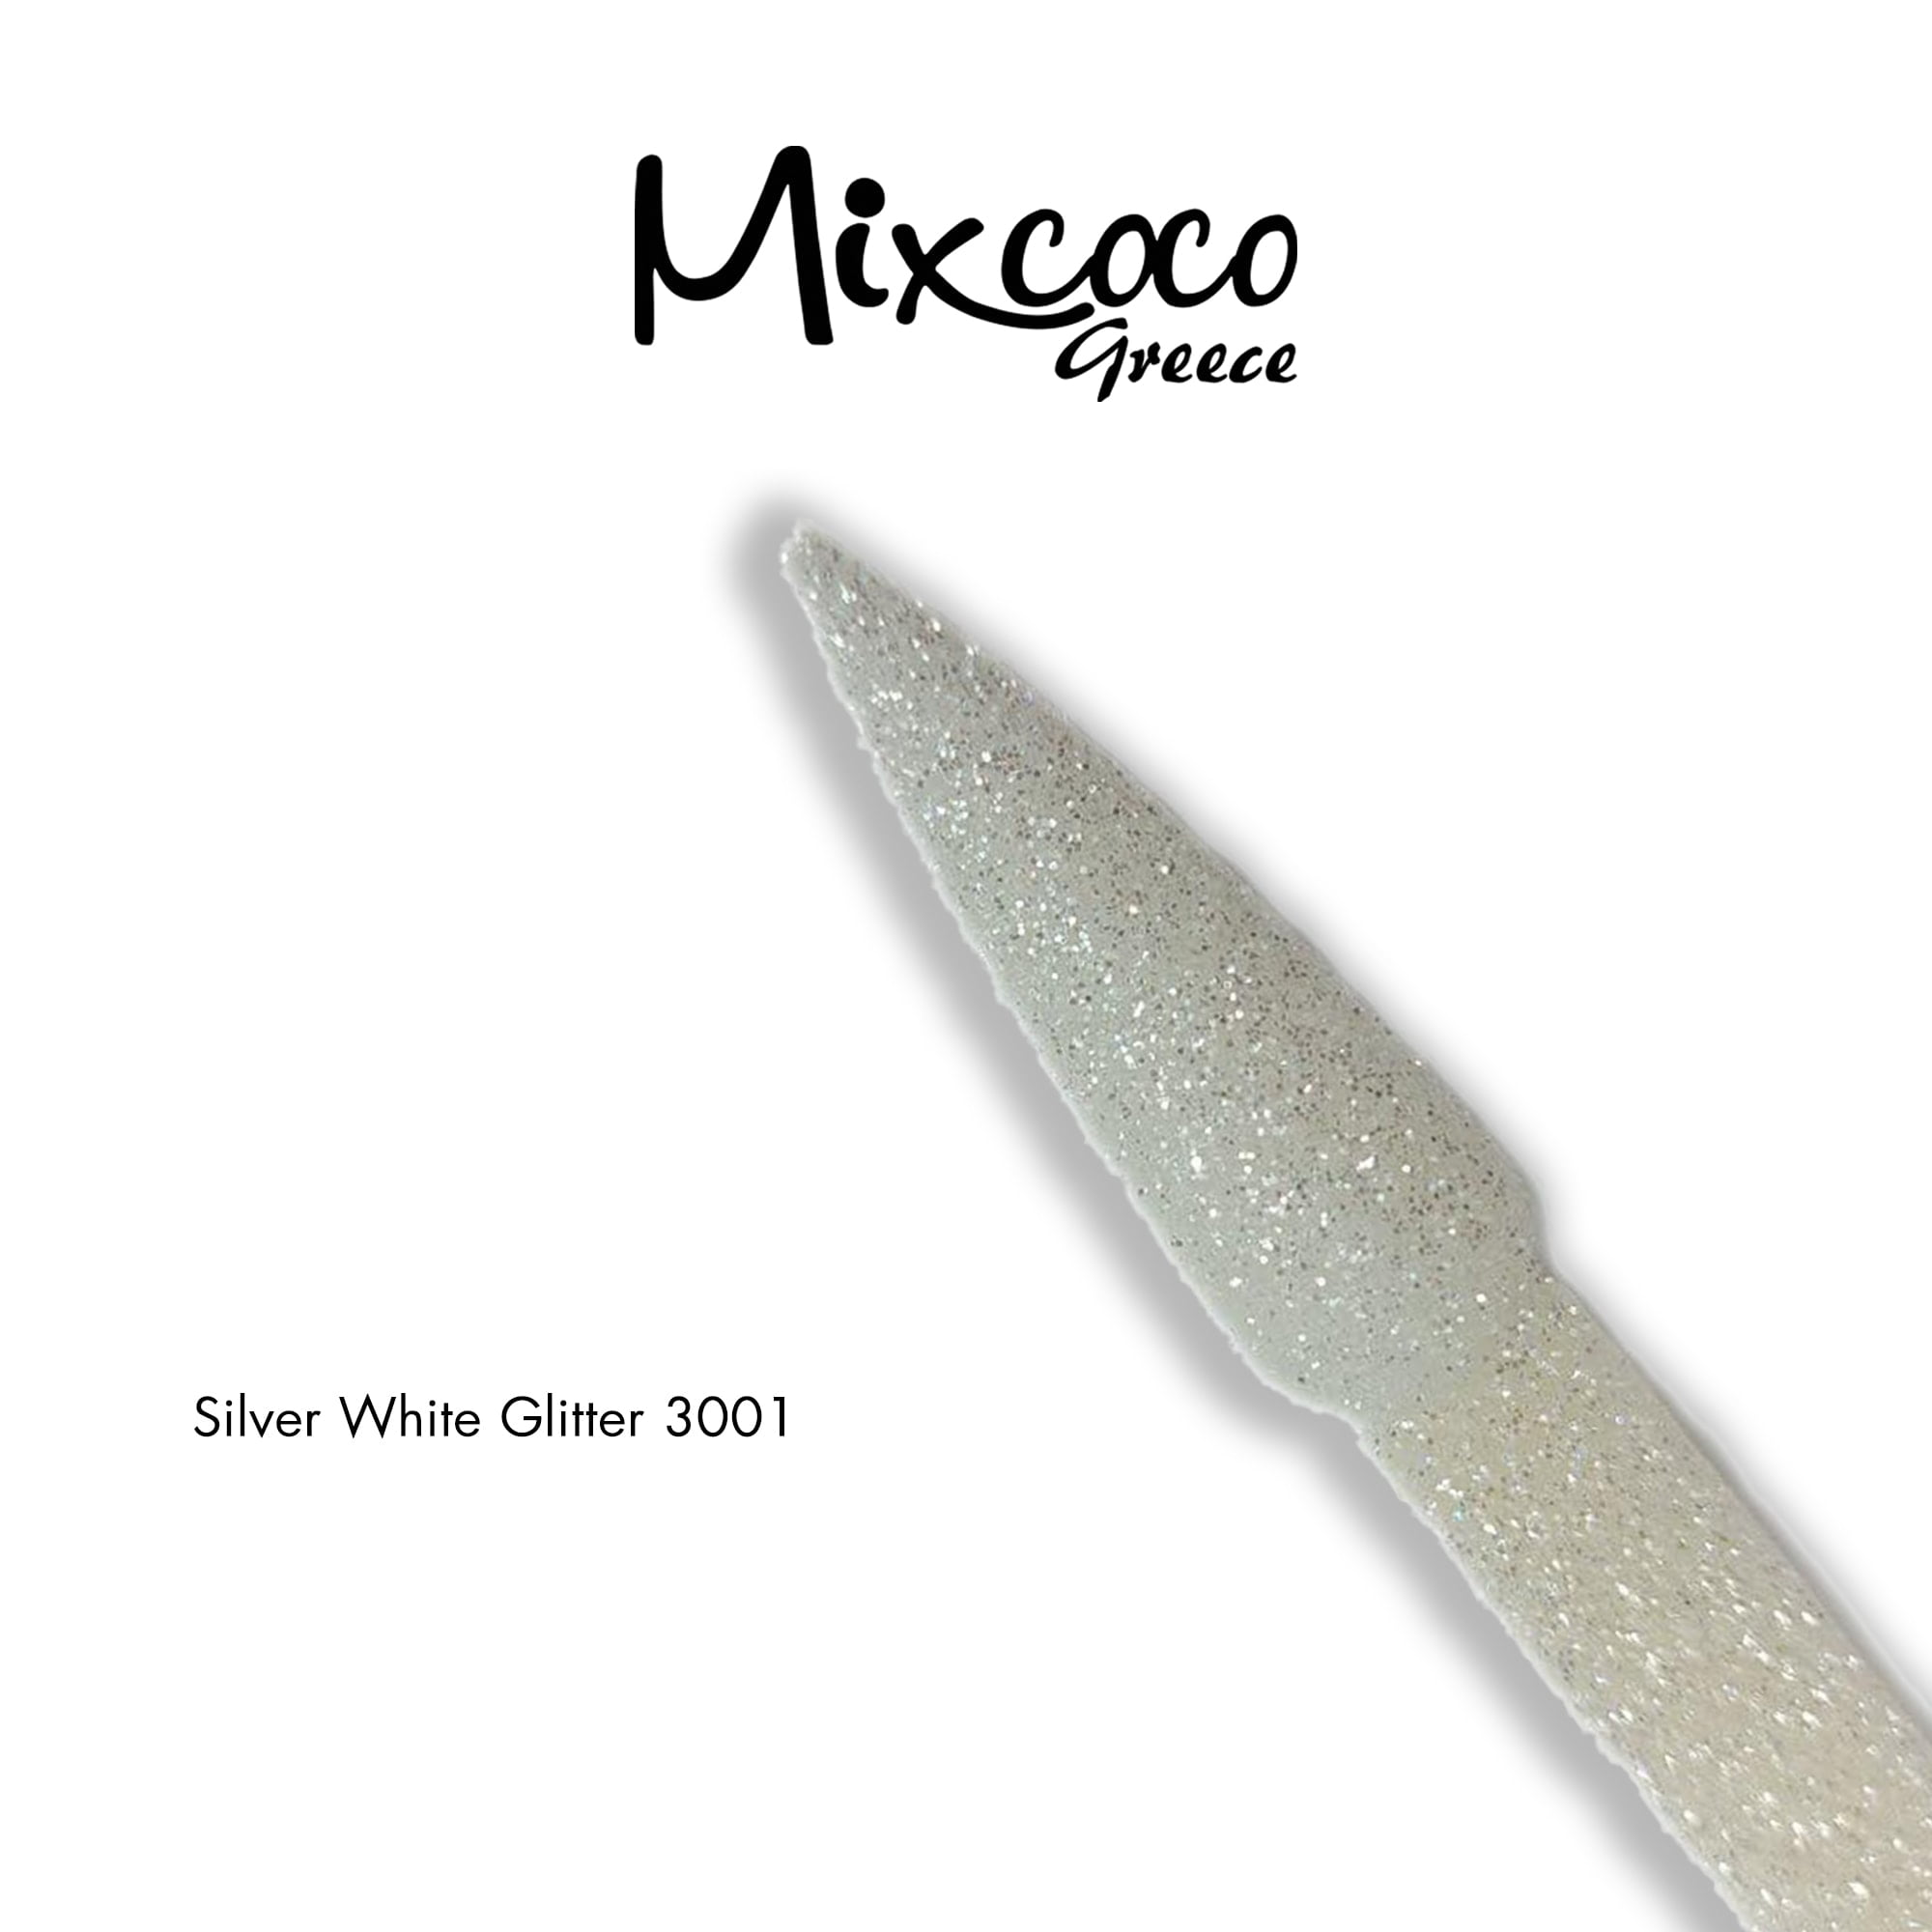 Silver White Glitter & Flake 3001 10gr